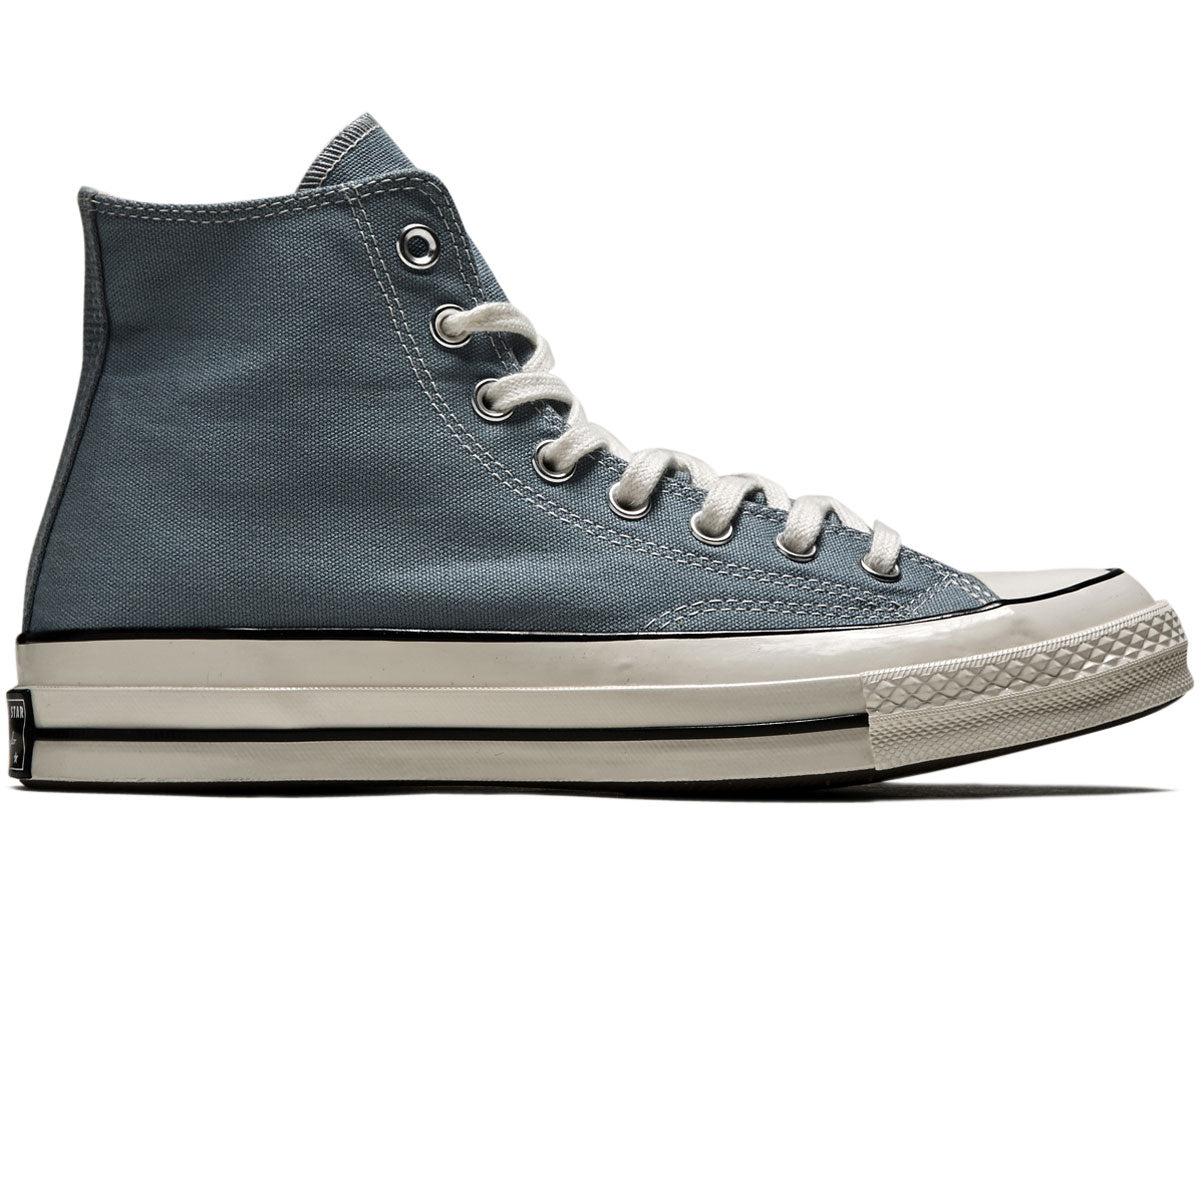 Converse Chuck 70 Hi Shoes - Cocoon Blue/Egret/Black image 1